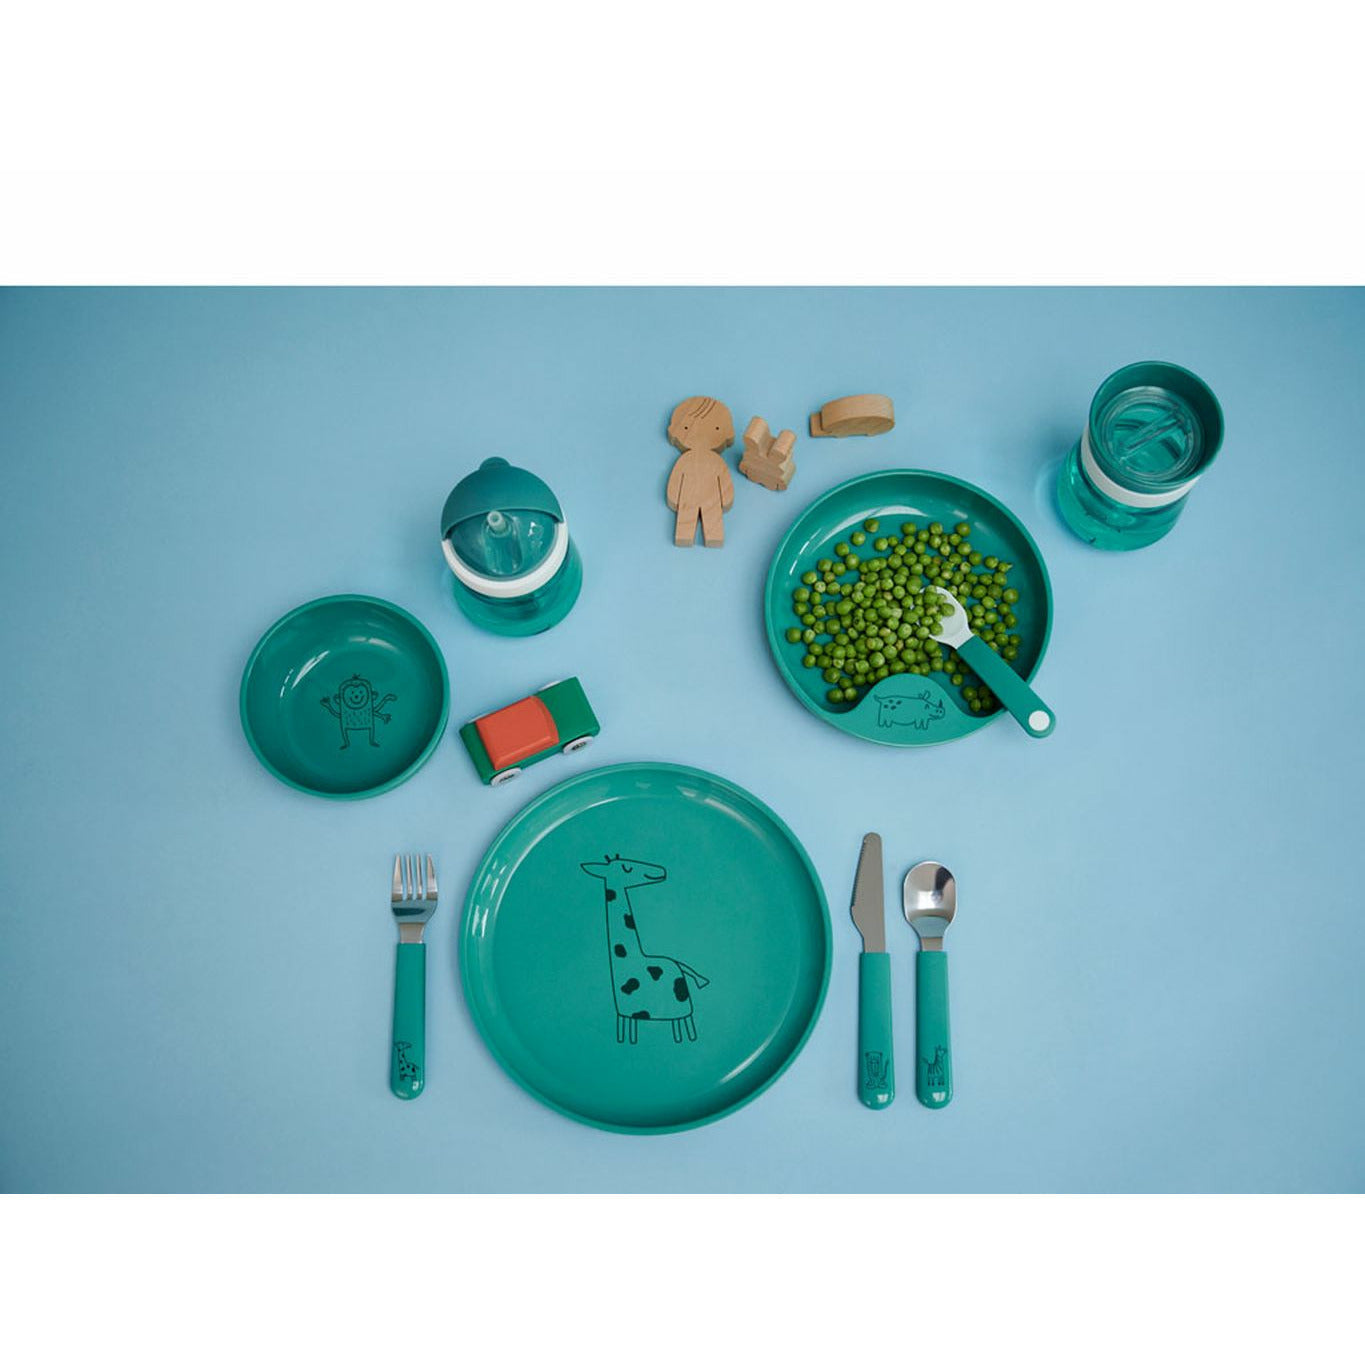 Mepal Drinkglas voor kinderen 0,25 l, turquoise